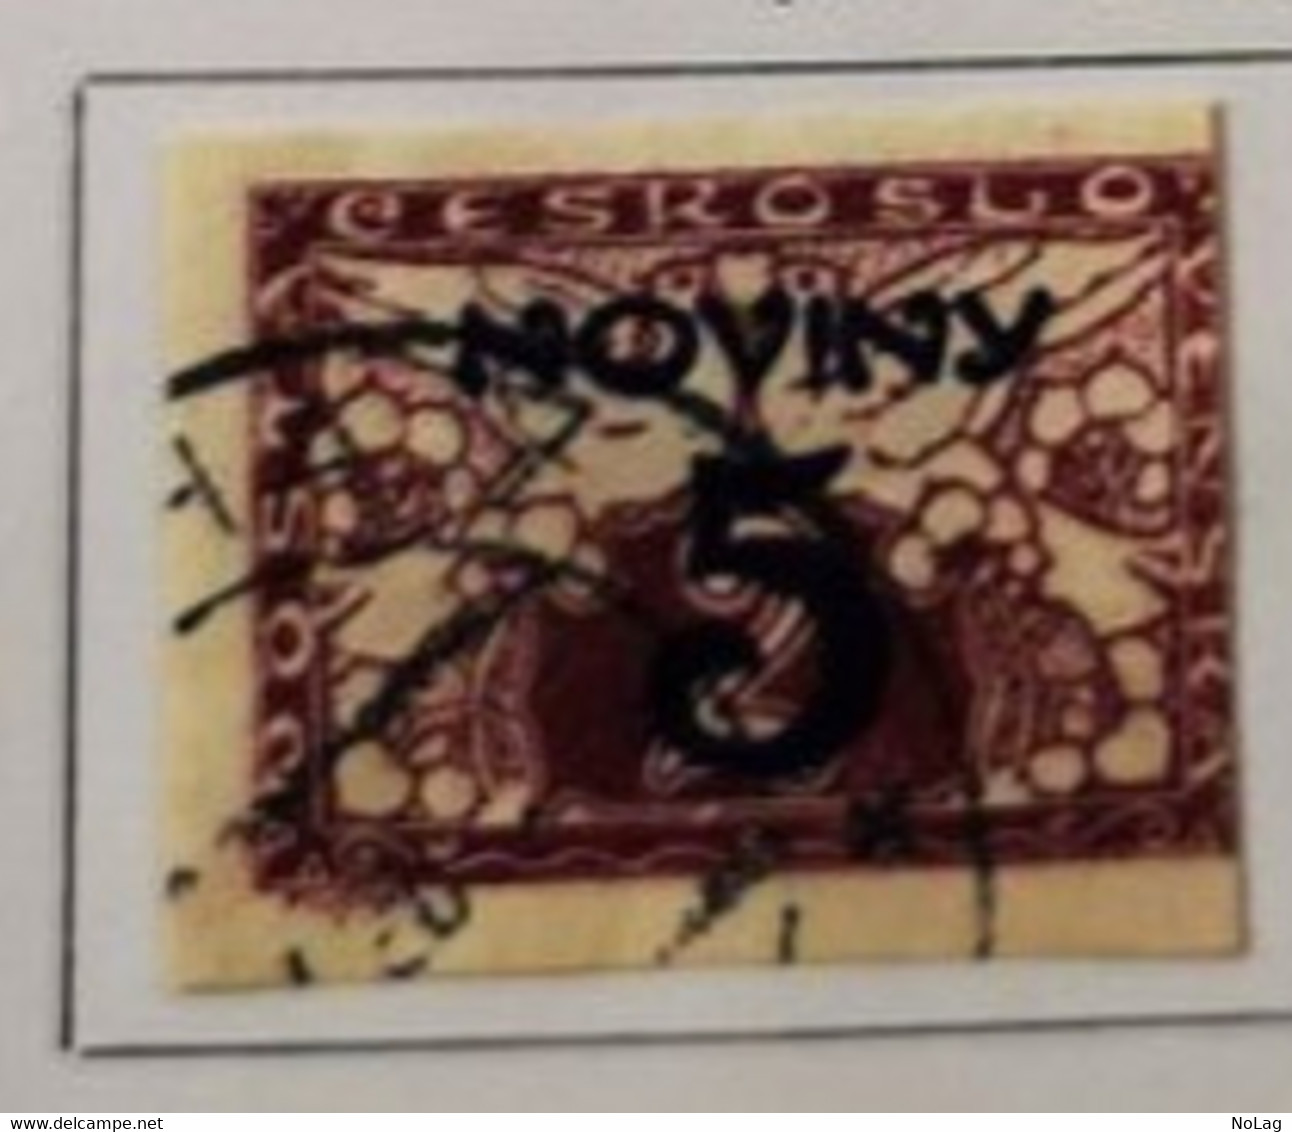 Tchécoslovaquie - 1937/66 _ Lot varié de 10 timbres _ Y&T N°1-2-4-5-7-8-9-14-17-18 0/